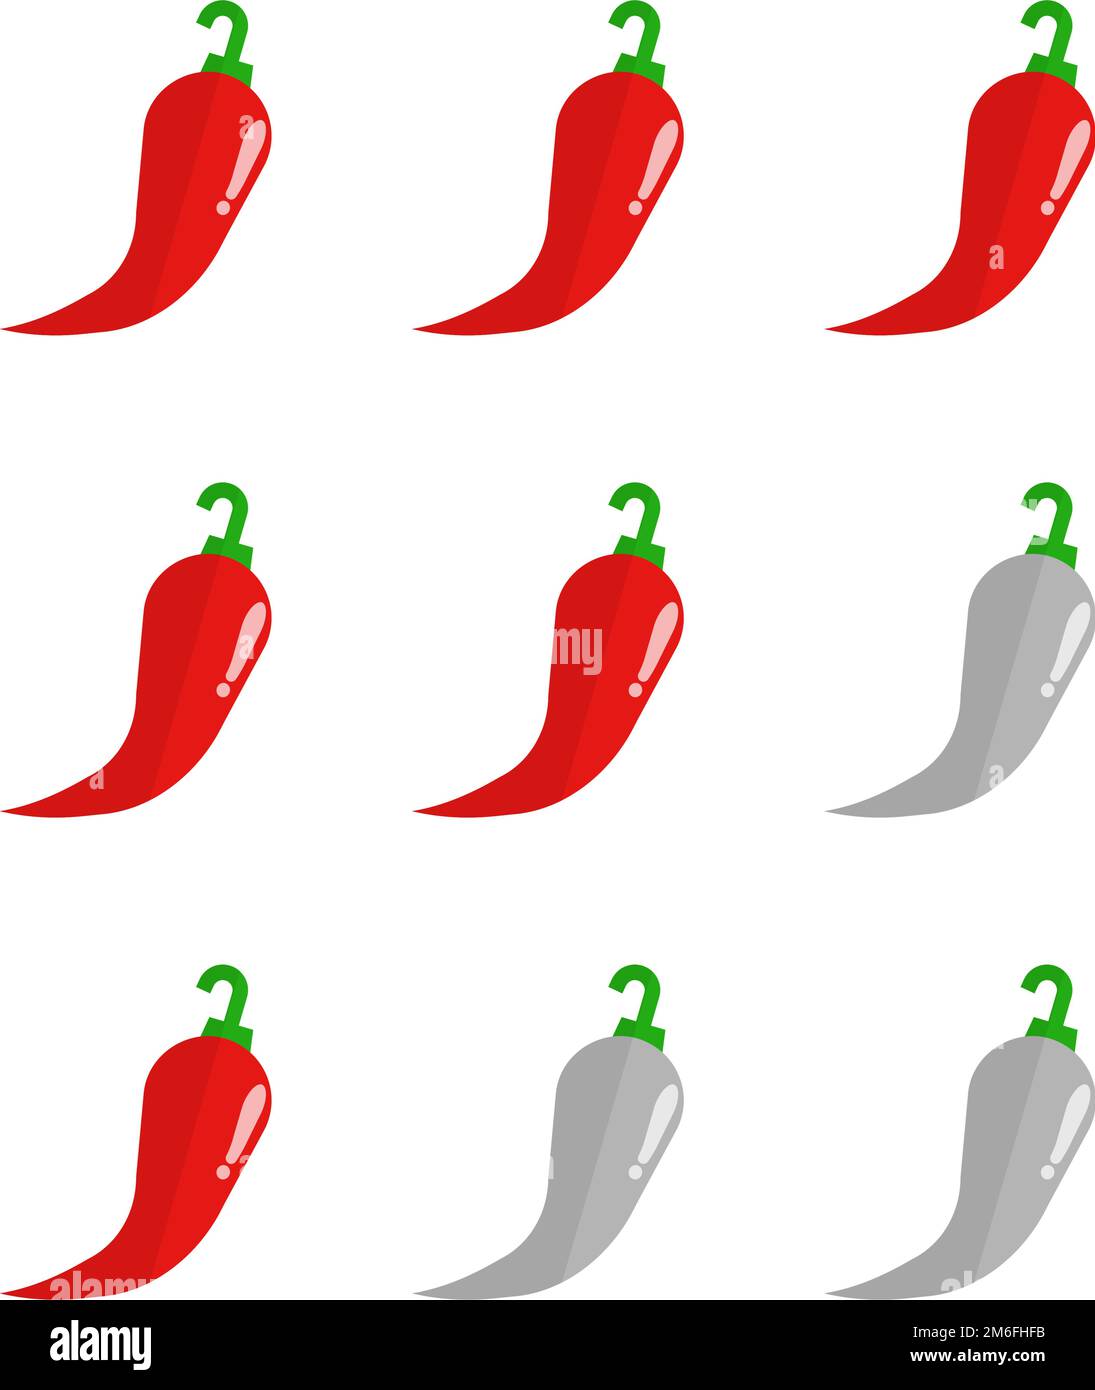 Scharf-Chili-Etiketten mit heißem Pfefferlevel. Vector würzige Lebensmittel  grün mild, Mittel und rot extra heiß, jalapeno Pfeffer Feuer Flamme, Sauce  Paket Icons Stock-Vektorgrafik - Alamy